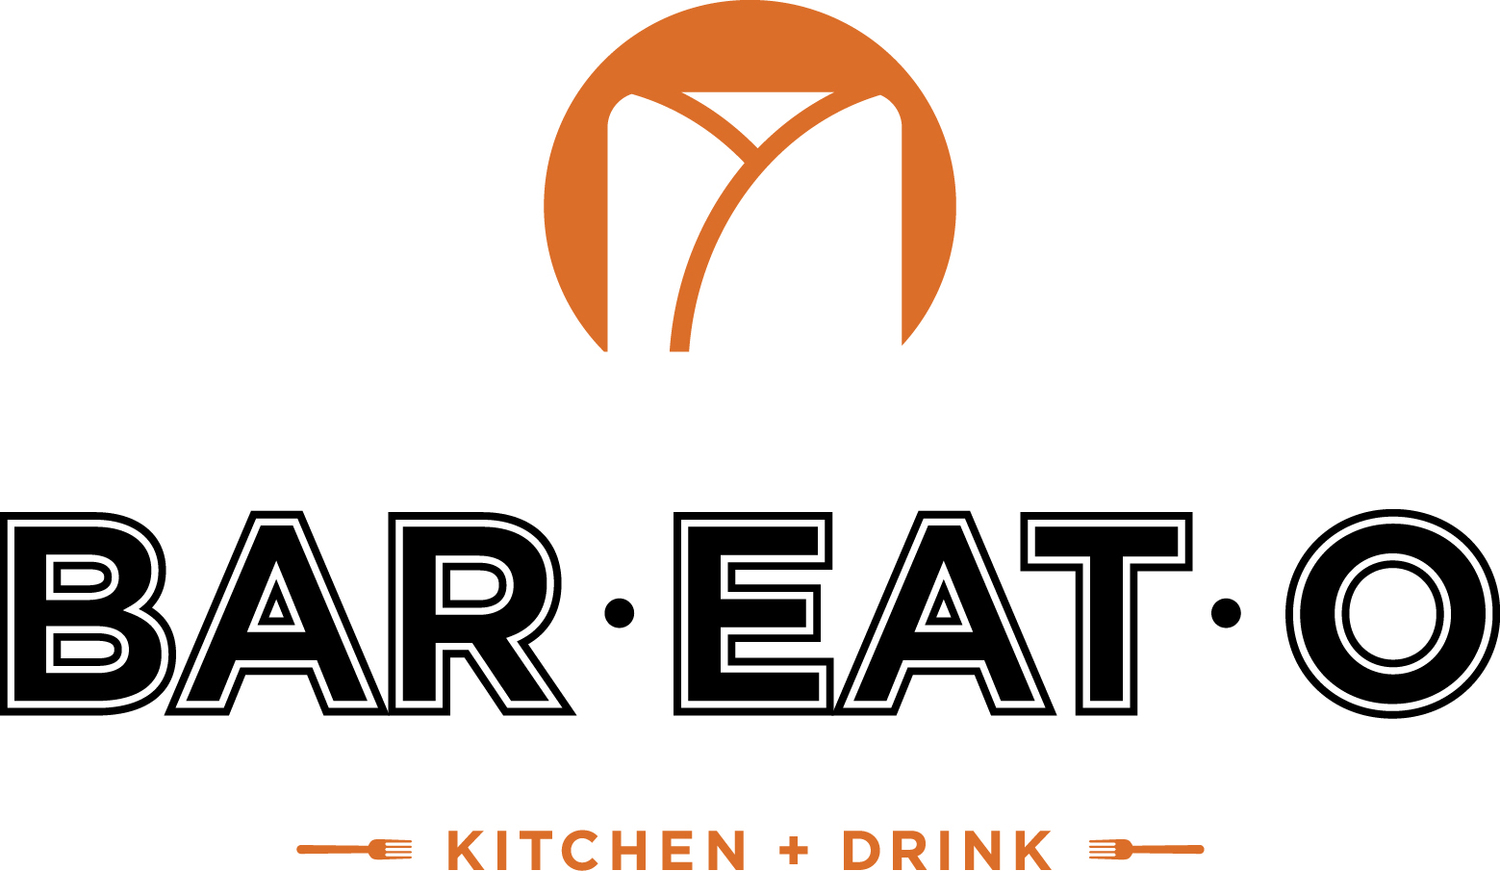 Bar-Eat-O